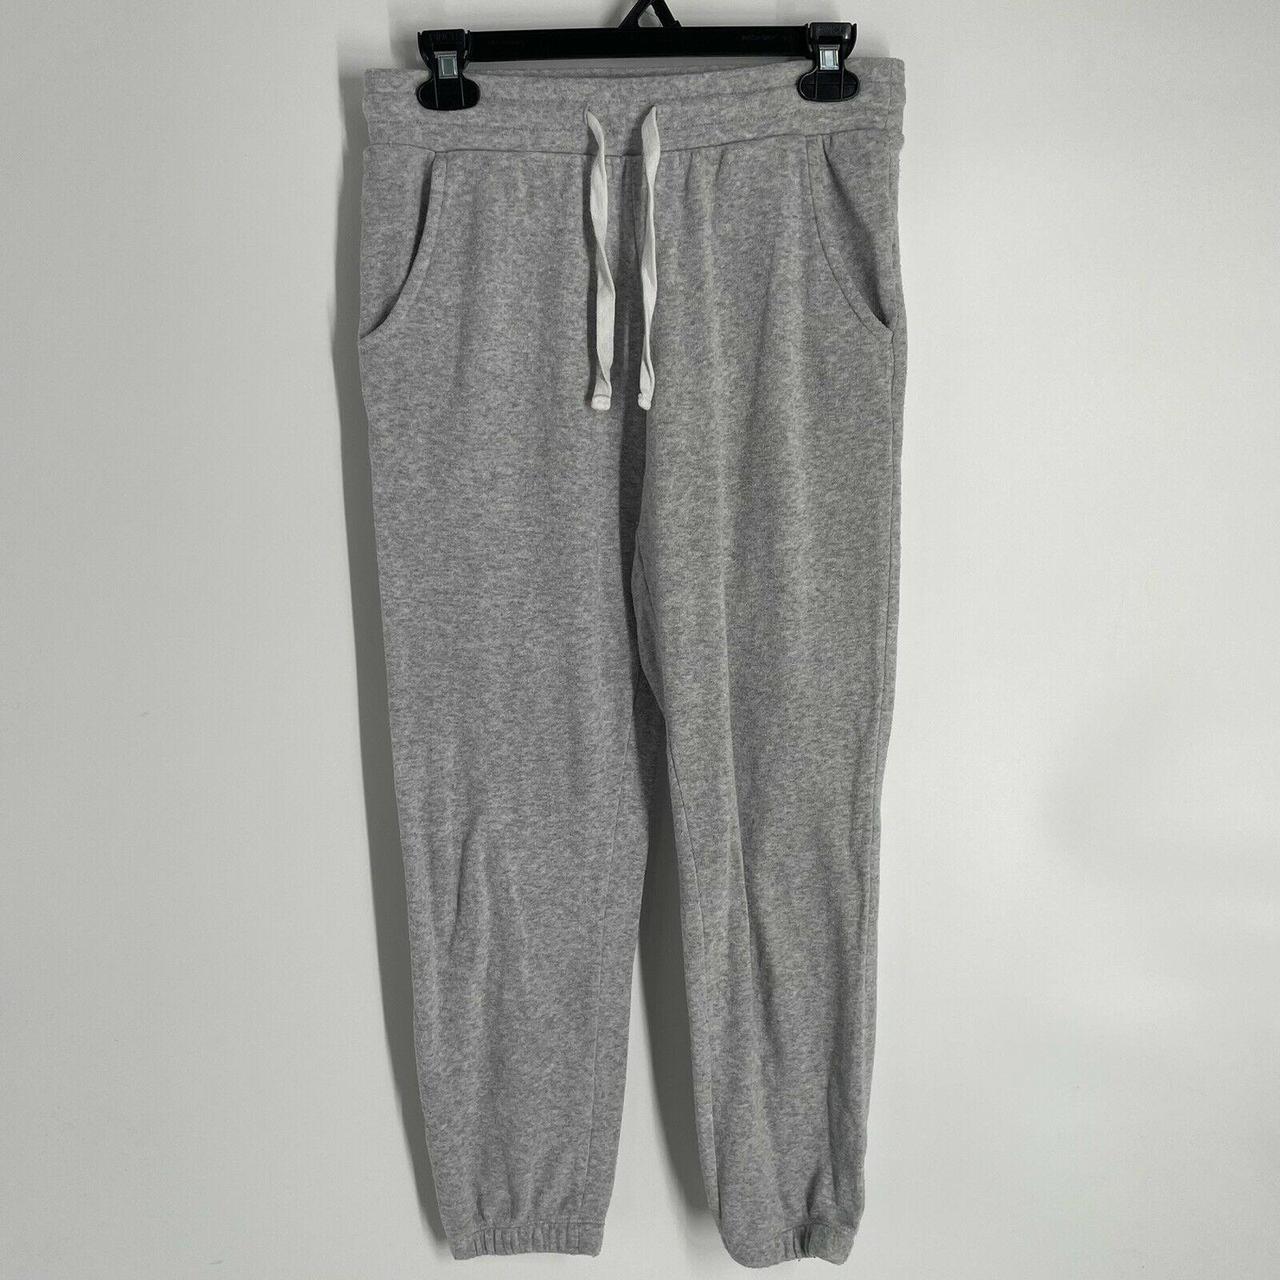 Colsie Women Sweatpants Grey Jogger Pants Fleece... - Depop